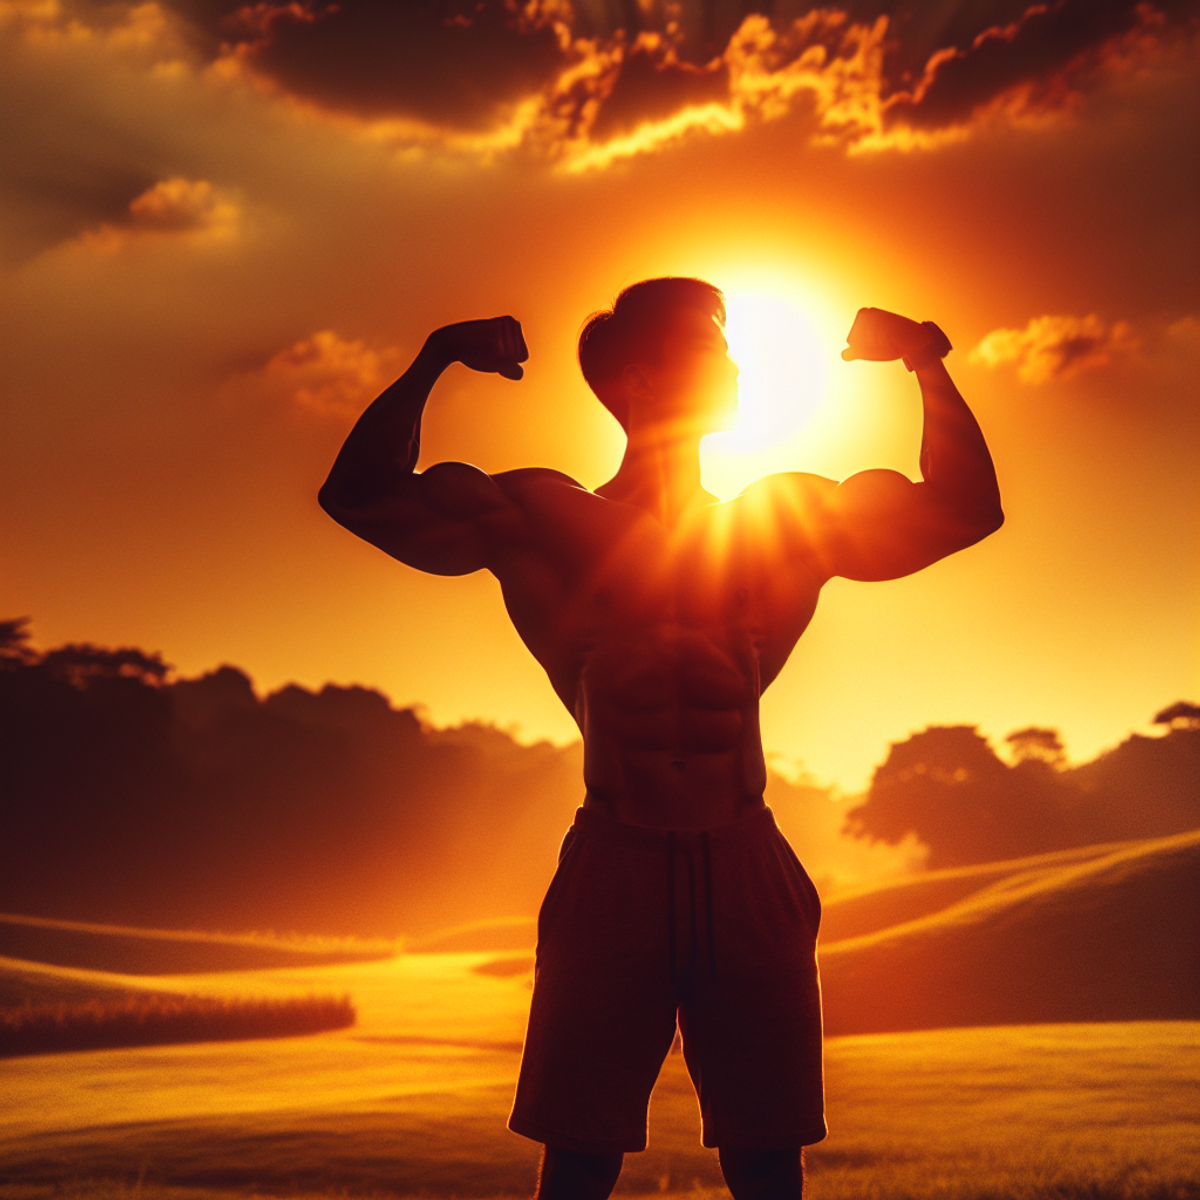 Una persona con una costruzione atletica e una discesa asiatica, in piedi all'aperto, flettendo i muscoli di spicco sullo sfondo di un tramonto luminoso e ardente.